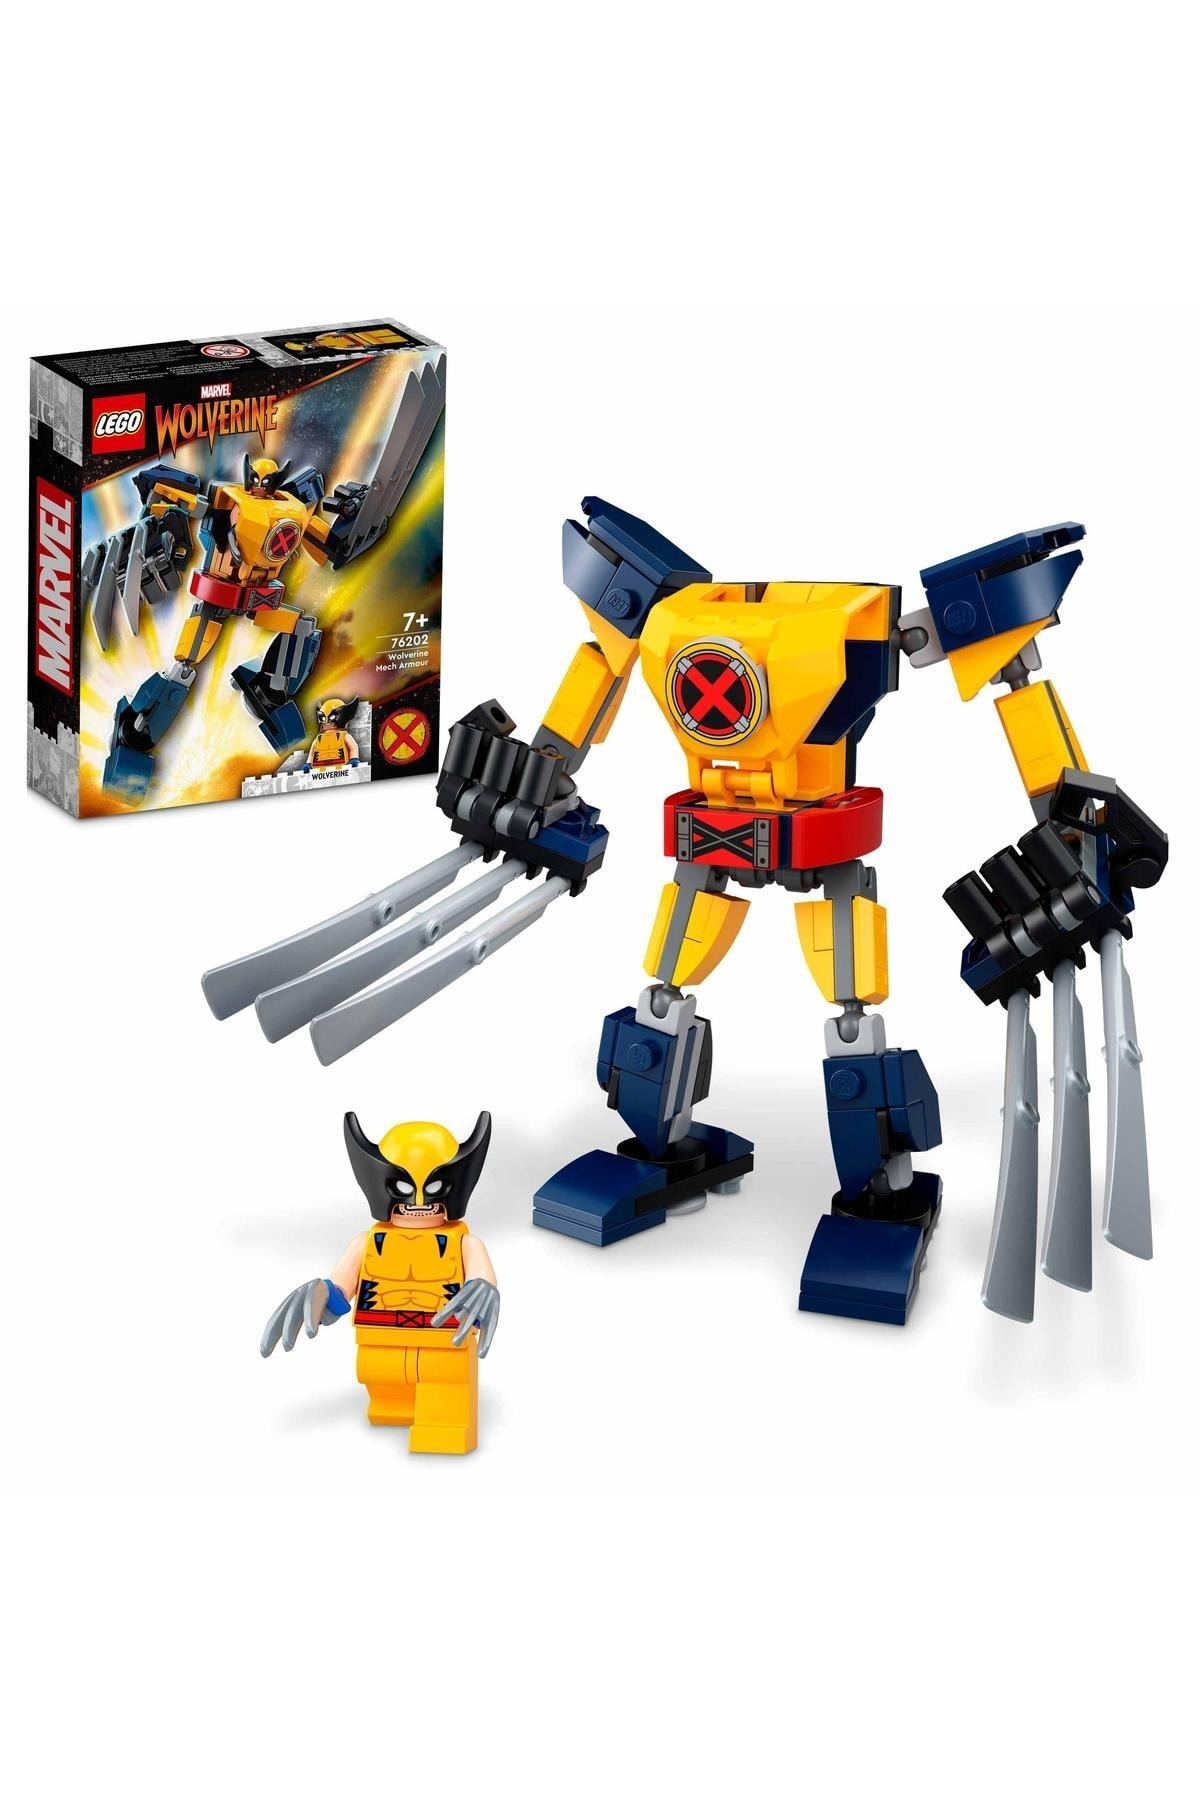 LEGO Marvel Wolverine Robot Zırhı 76202 – Robot Zırh ve Minifigür İçeren Yaratıcı Oyuncak Yapım Seti